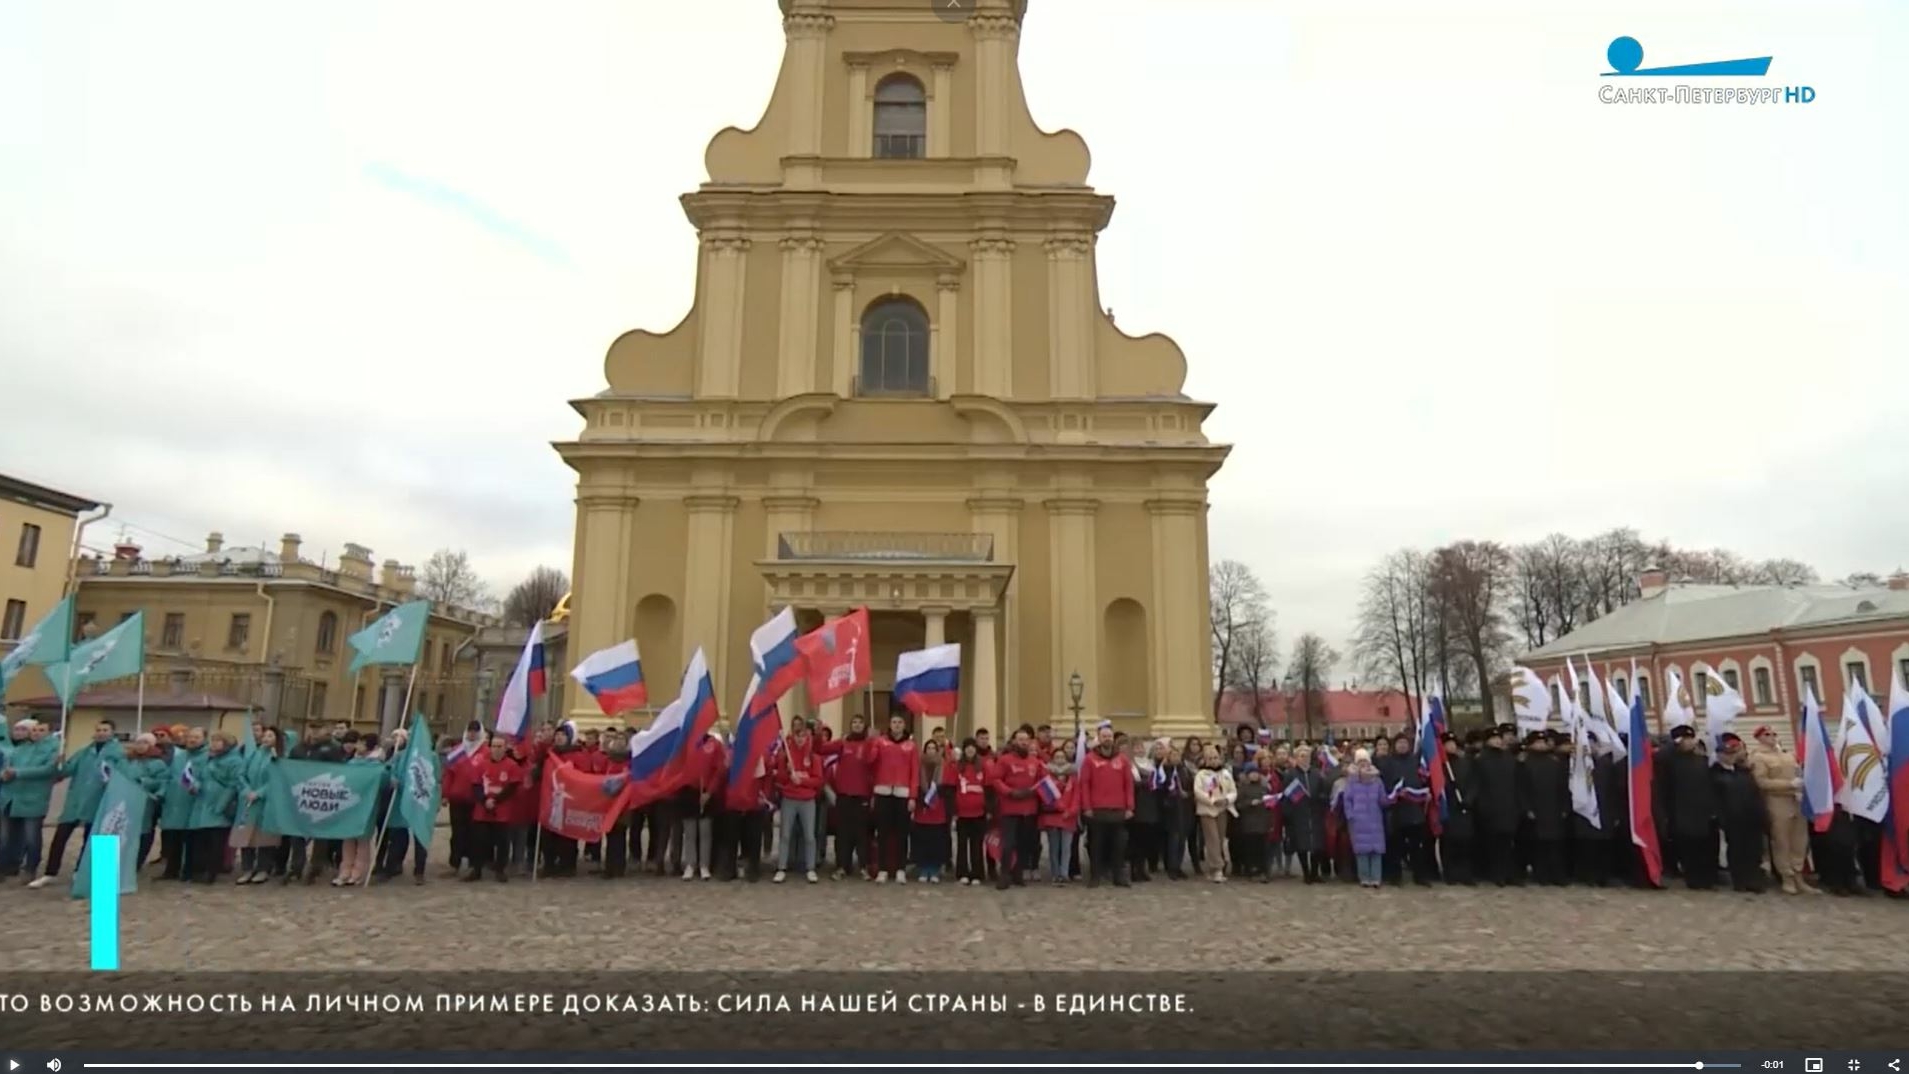 Петербургские активисты в День народного единства устроили шествие и исполнили гимн на Соборной площади